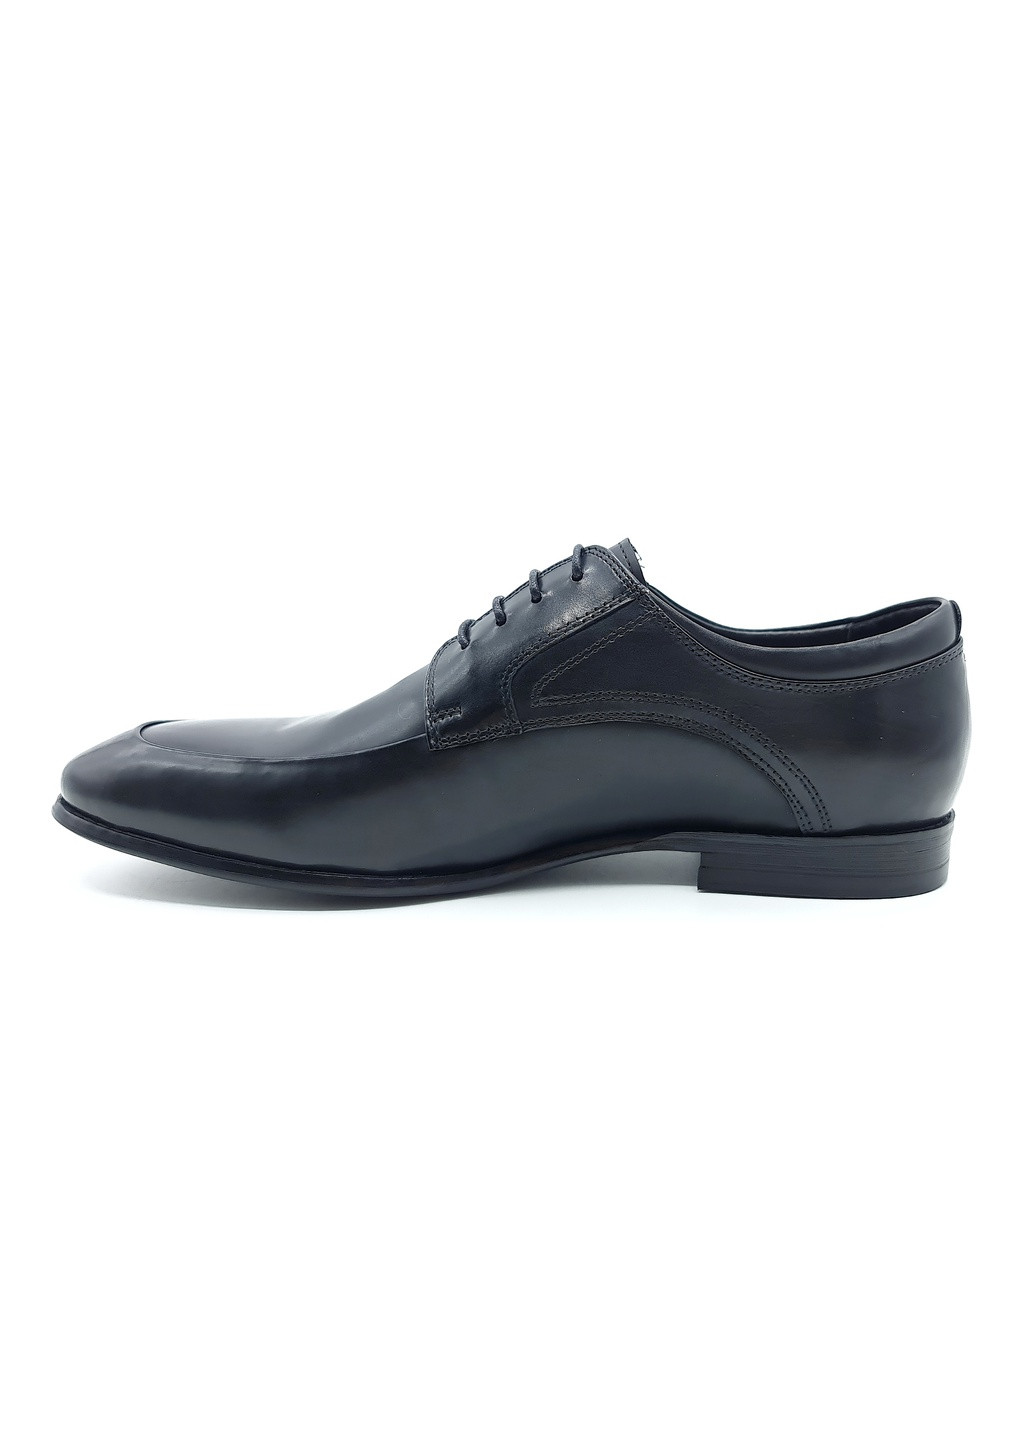 Черные чоловічі туфлі чорні шкіряні bv-19-5 28 см (р) Boss Victori